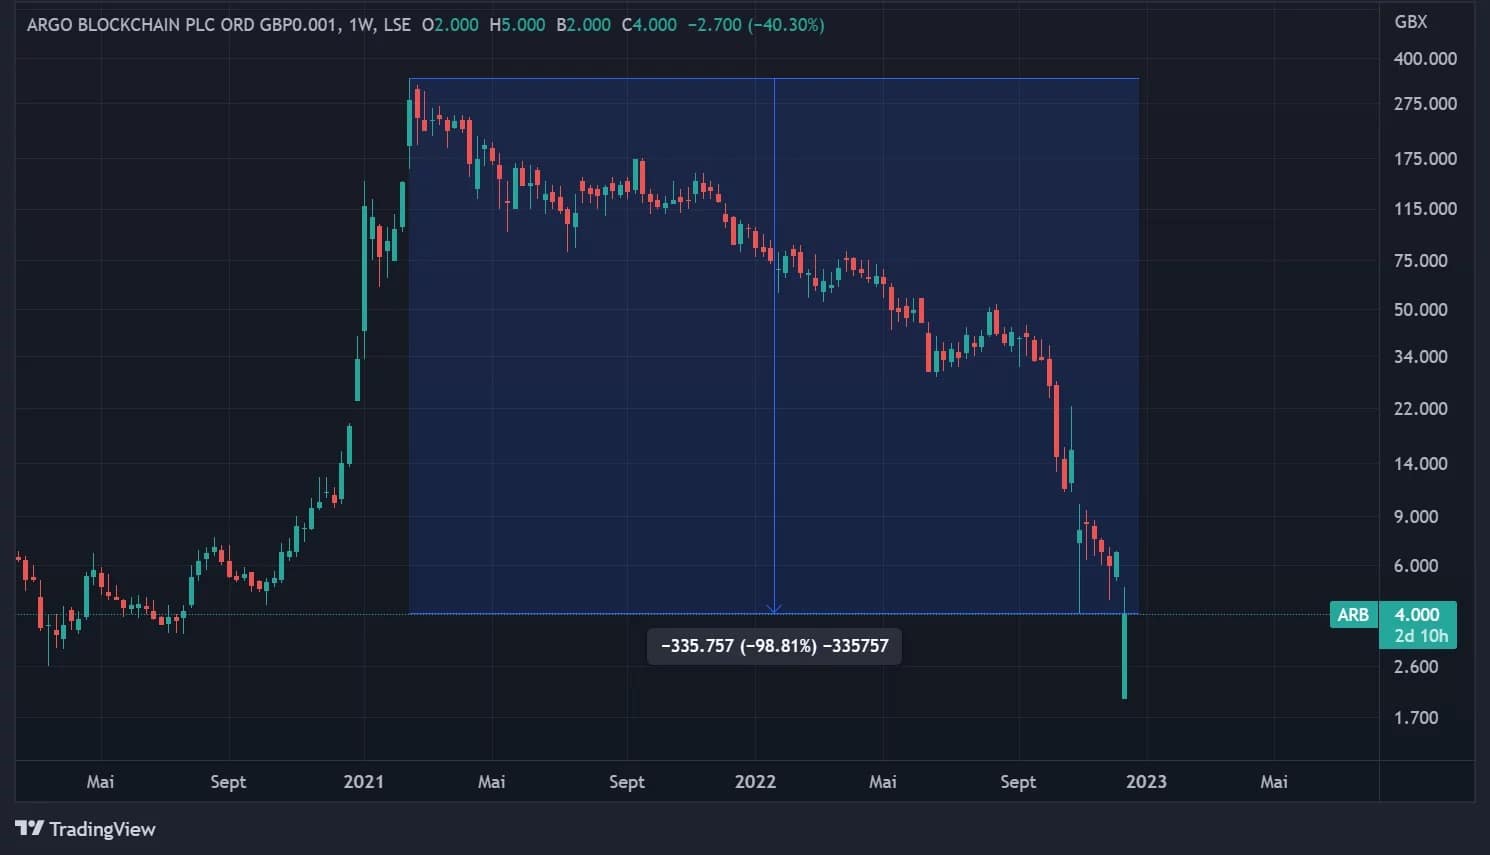 Рисунок 1 - Цена акций Argo Blockchain на Лондонской фондовой бирже